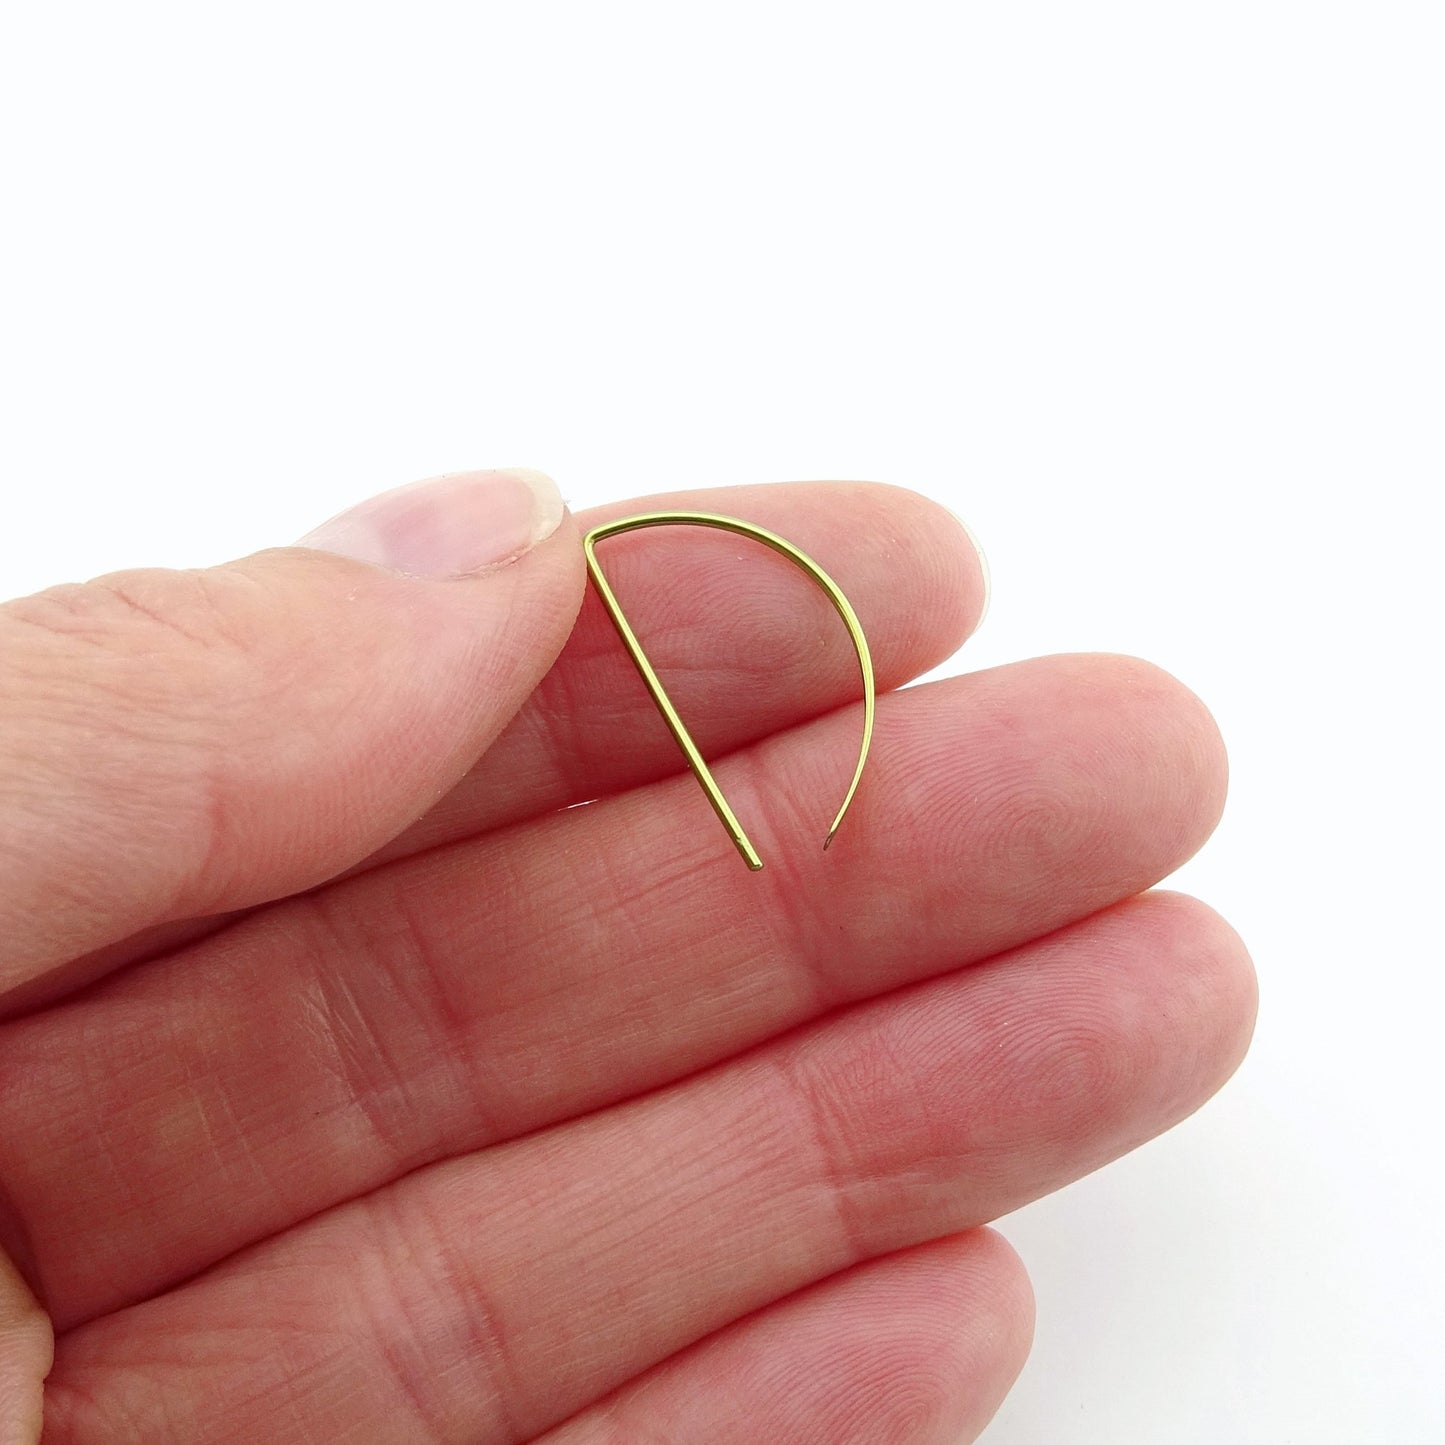 Gold Niobium Half a Hoop Threader Earrings, Gold Nickel Free D Shaped Slider Earrings, Niobium Small Open Hoops, Hypoallergenic Semi Circle